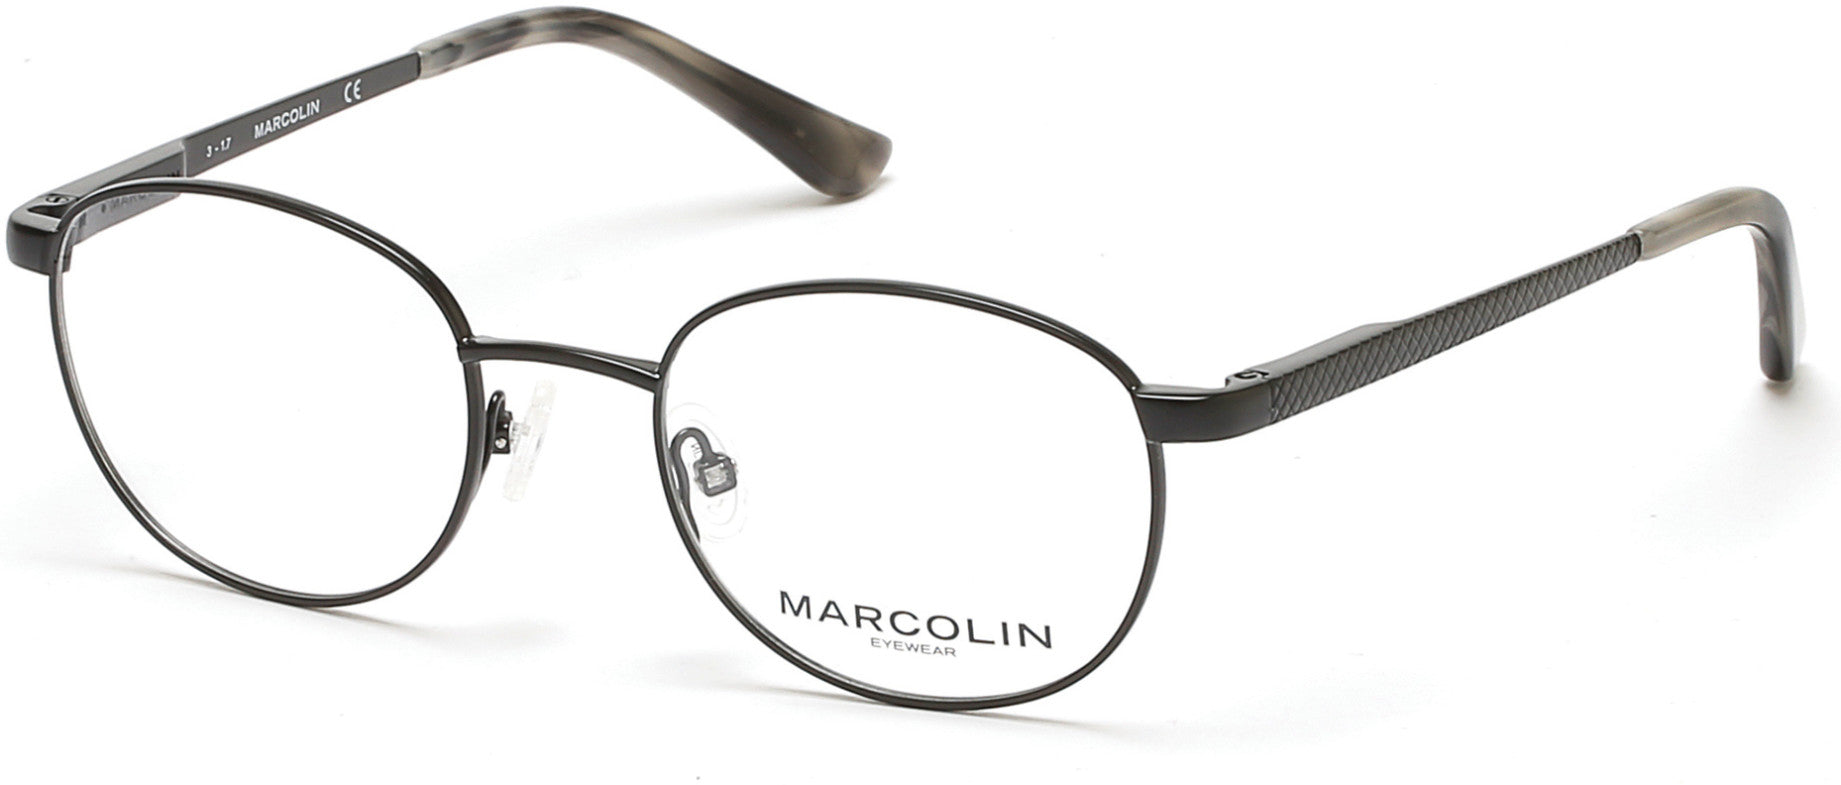 Marcolin MA3001 Eyeglasses 002-002 - Matte Black